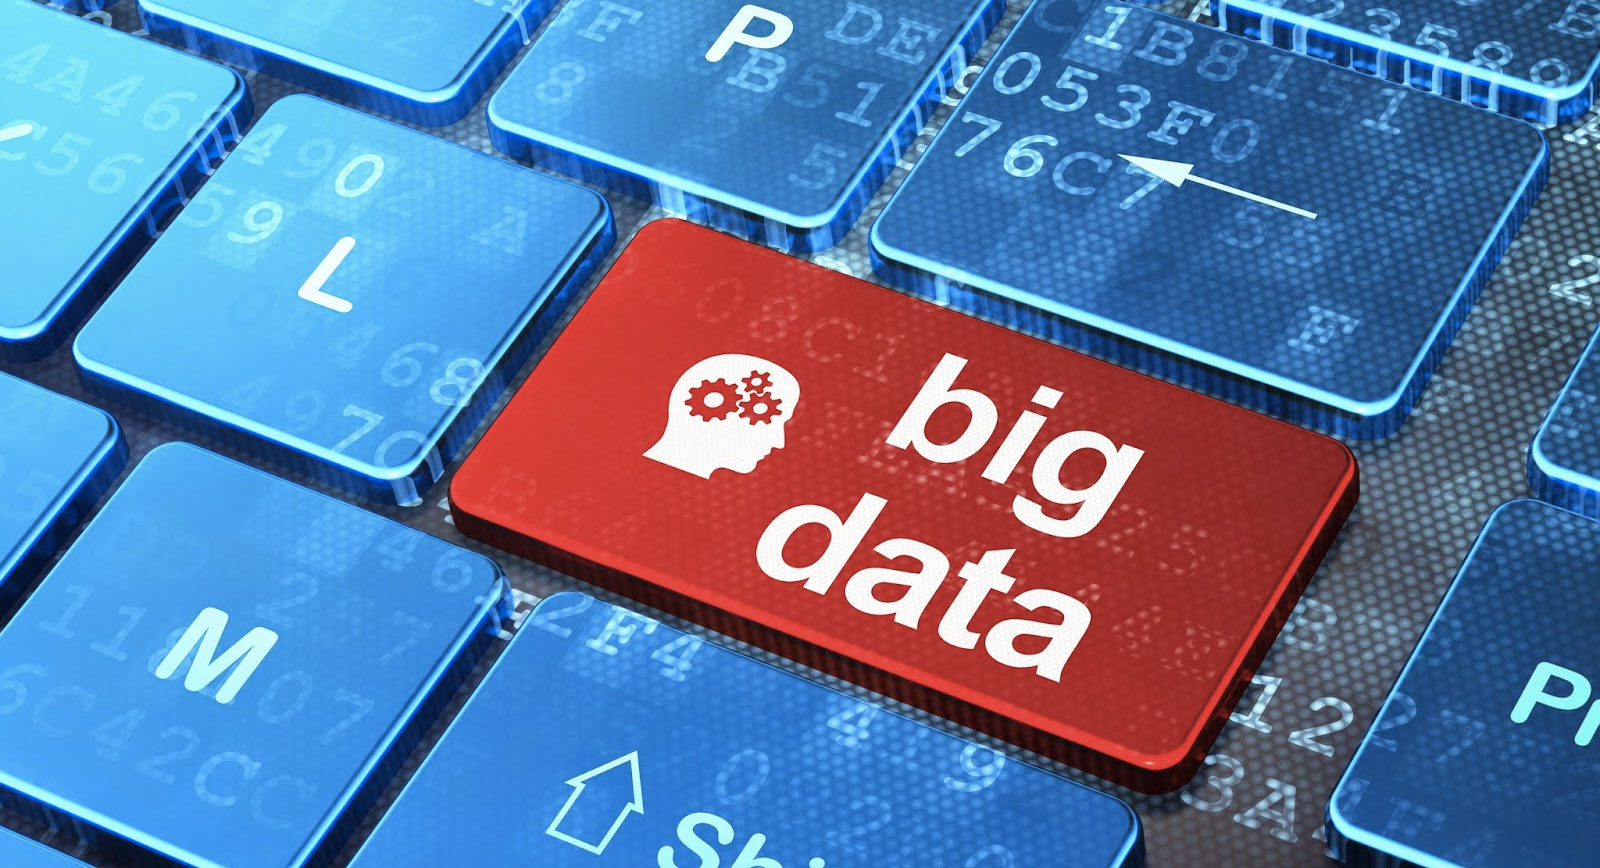 Компанія Сергія Бойка Big Data UA презентувала свою систему для вимірювання телеперегляду